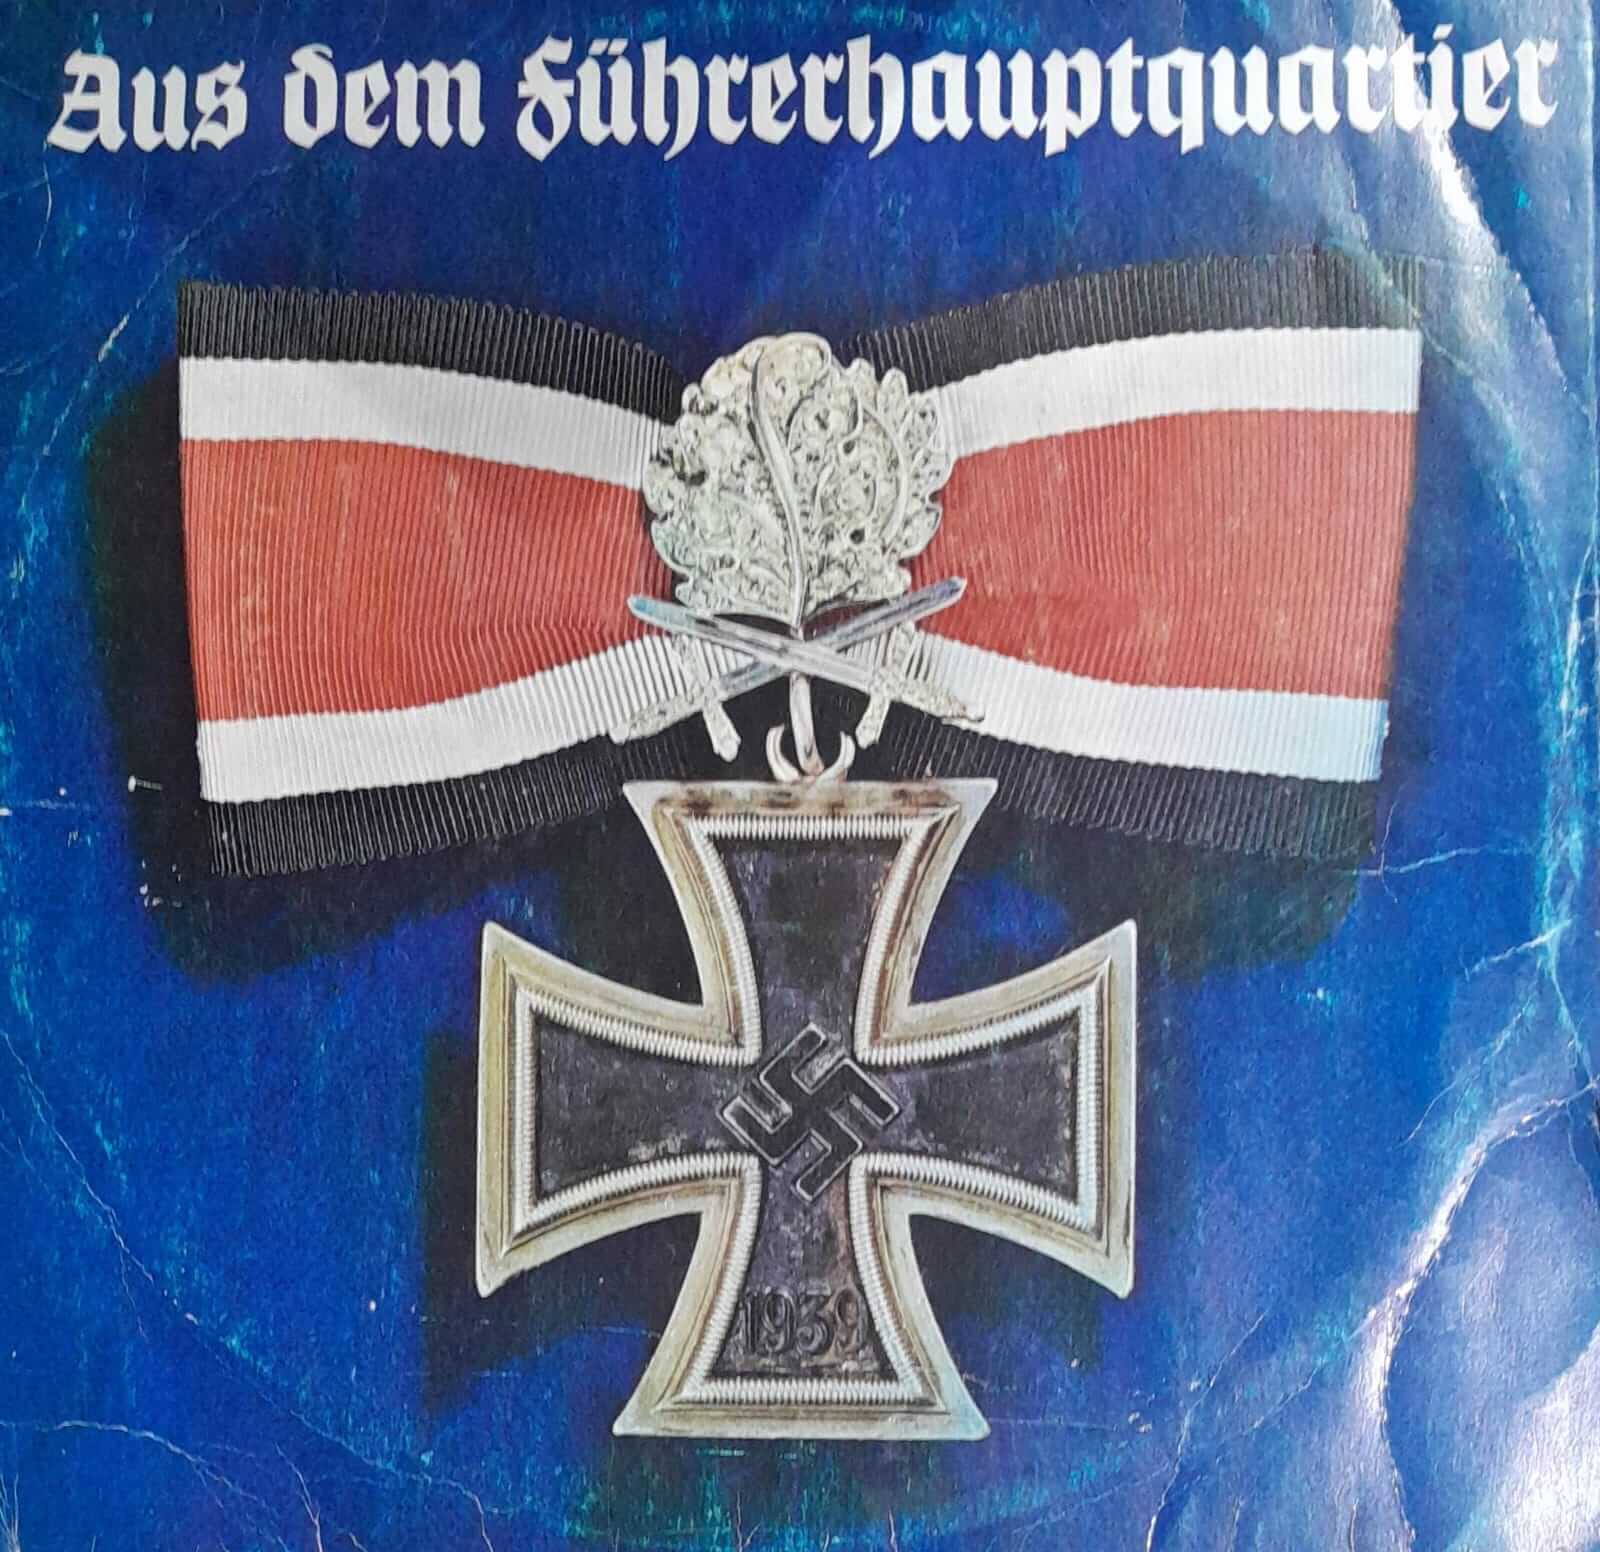 Aus dem Fuhrerhauptquartier (Desde el cuartel general del Führer)